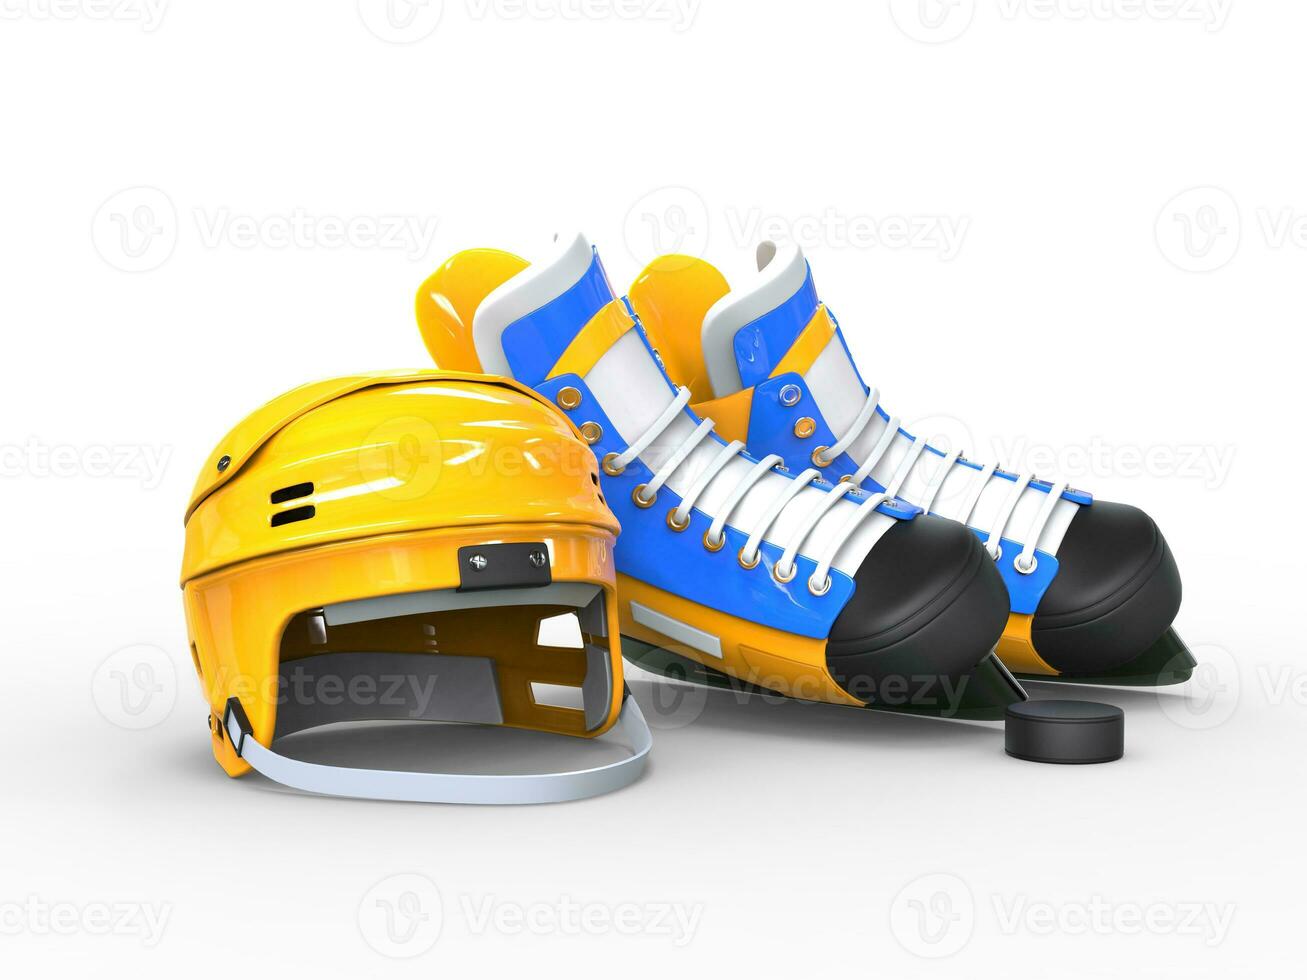 gul hockey hjälm, blå och gul blå hockey skridskor - isolerat på vit bakgrund foto